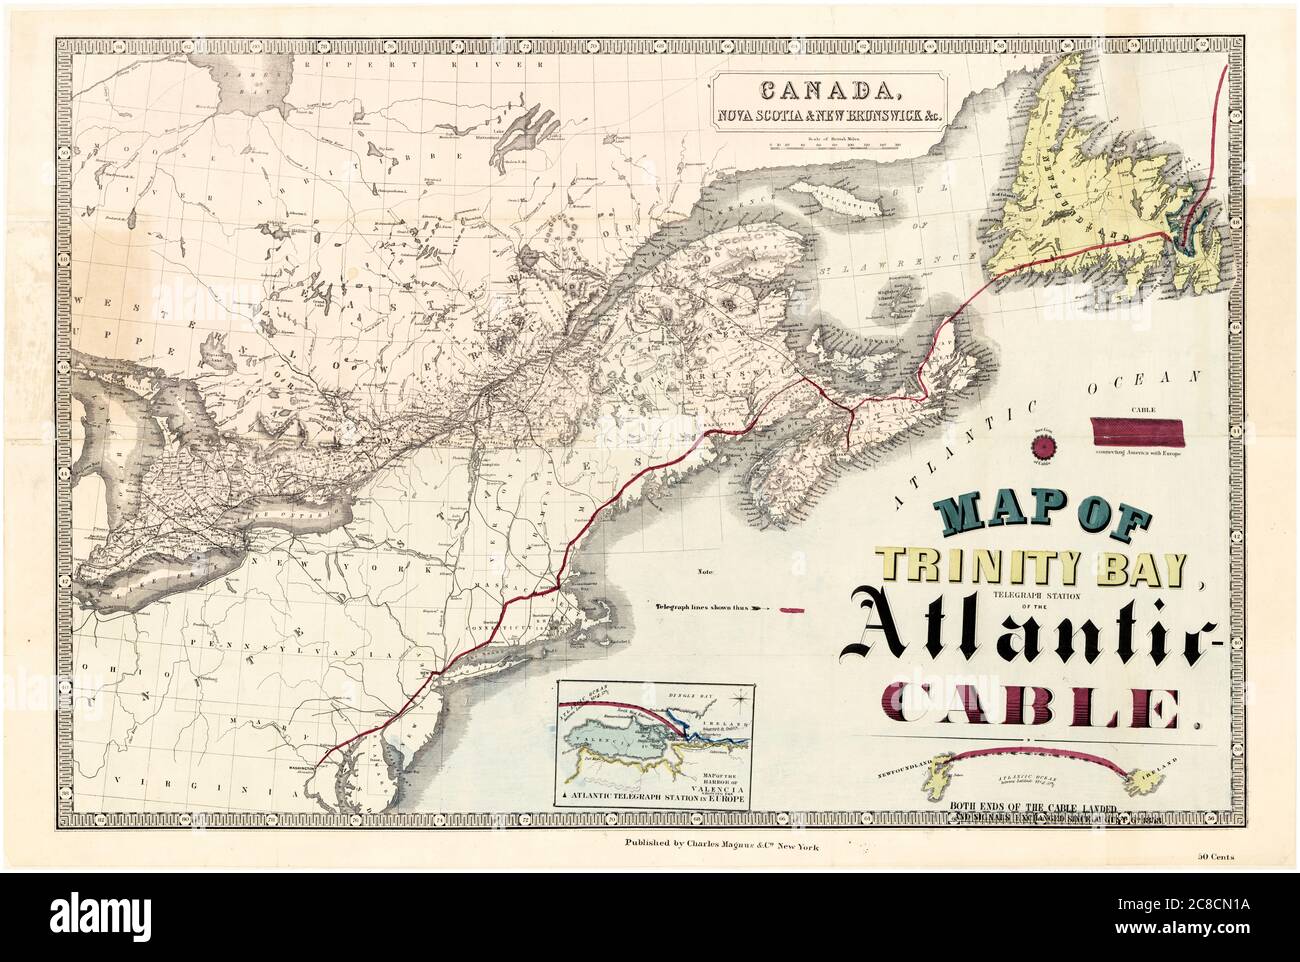 Carte de Trinity Bay (Terre-Neuve), la station télégraphique du câble transatlantique traversant l'océan Atlantique, 1858 Banque D'Images